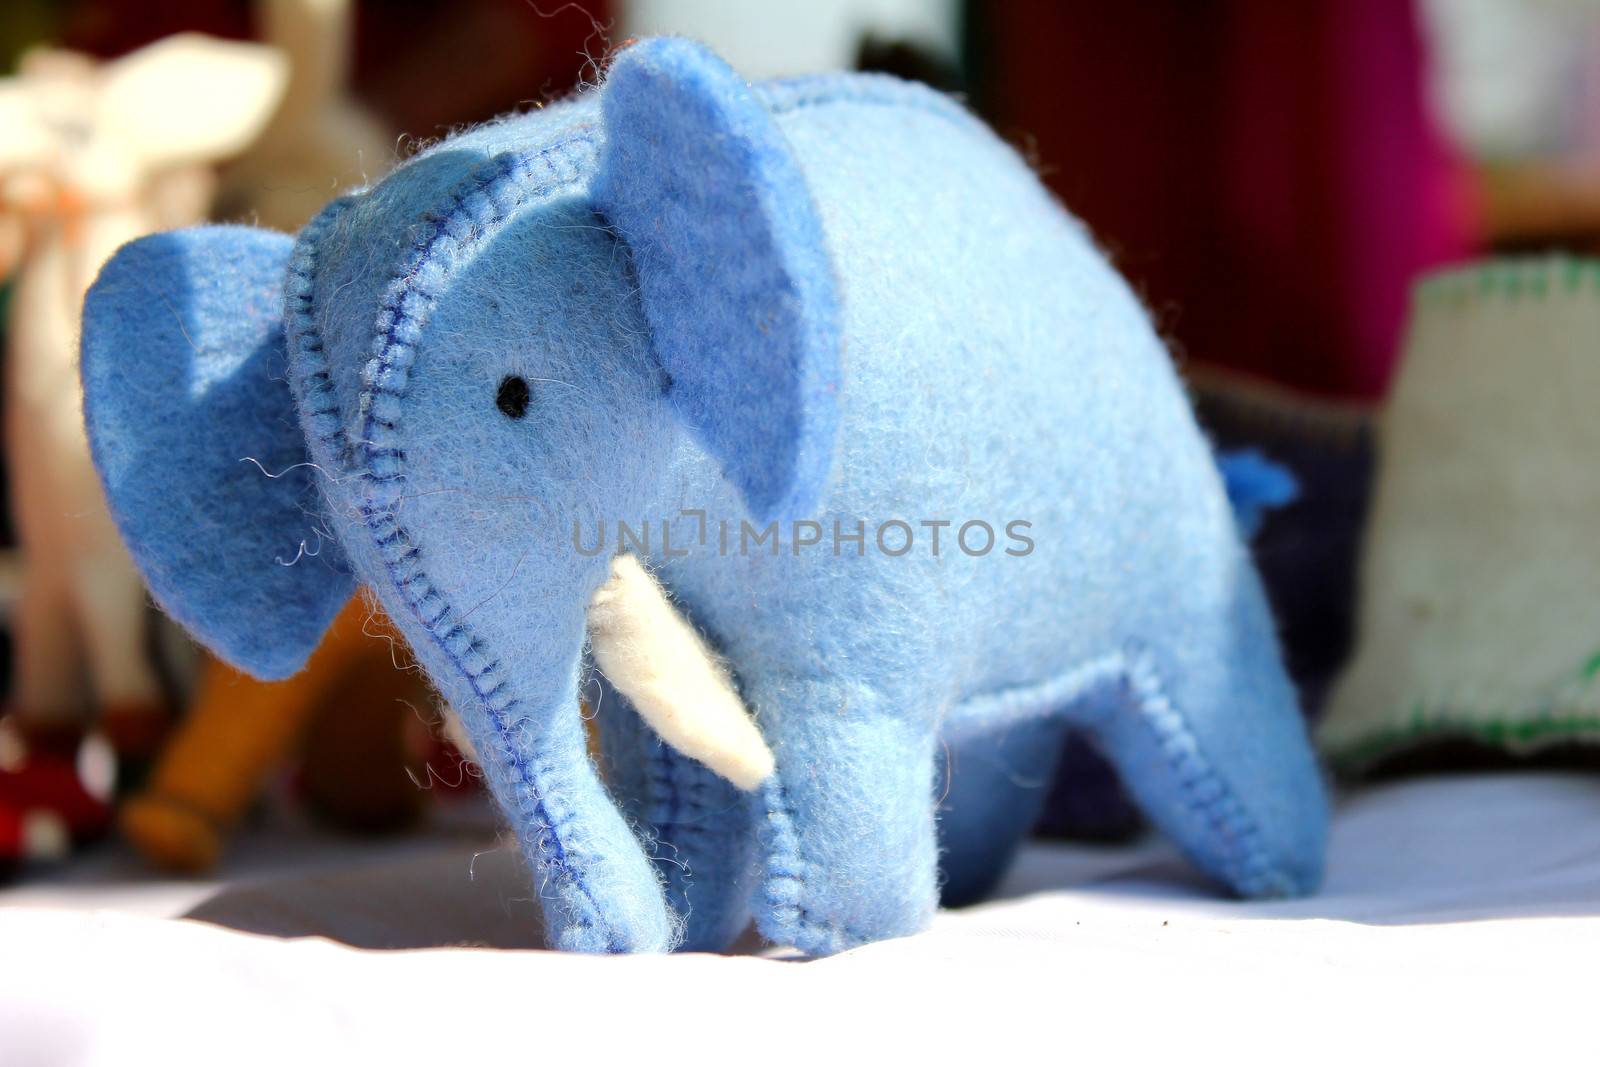 
elephant toy in surajkund fair